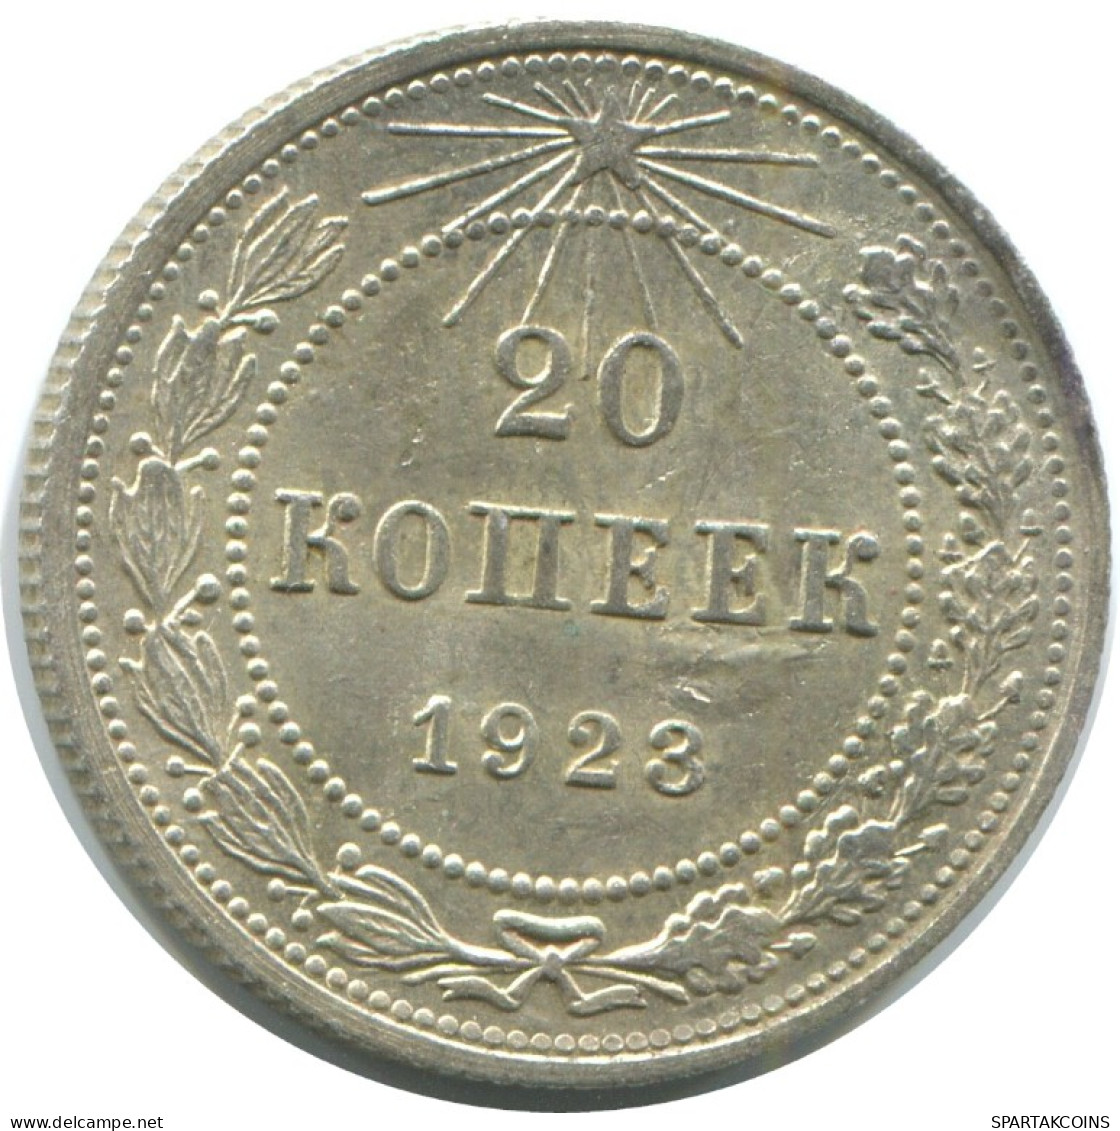 20 KOPEKS 1923 RUSSIA RSFSR SILVER Coin HIGH GRADE #AF586.4.U.A - Rusland